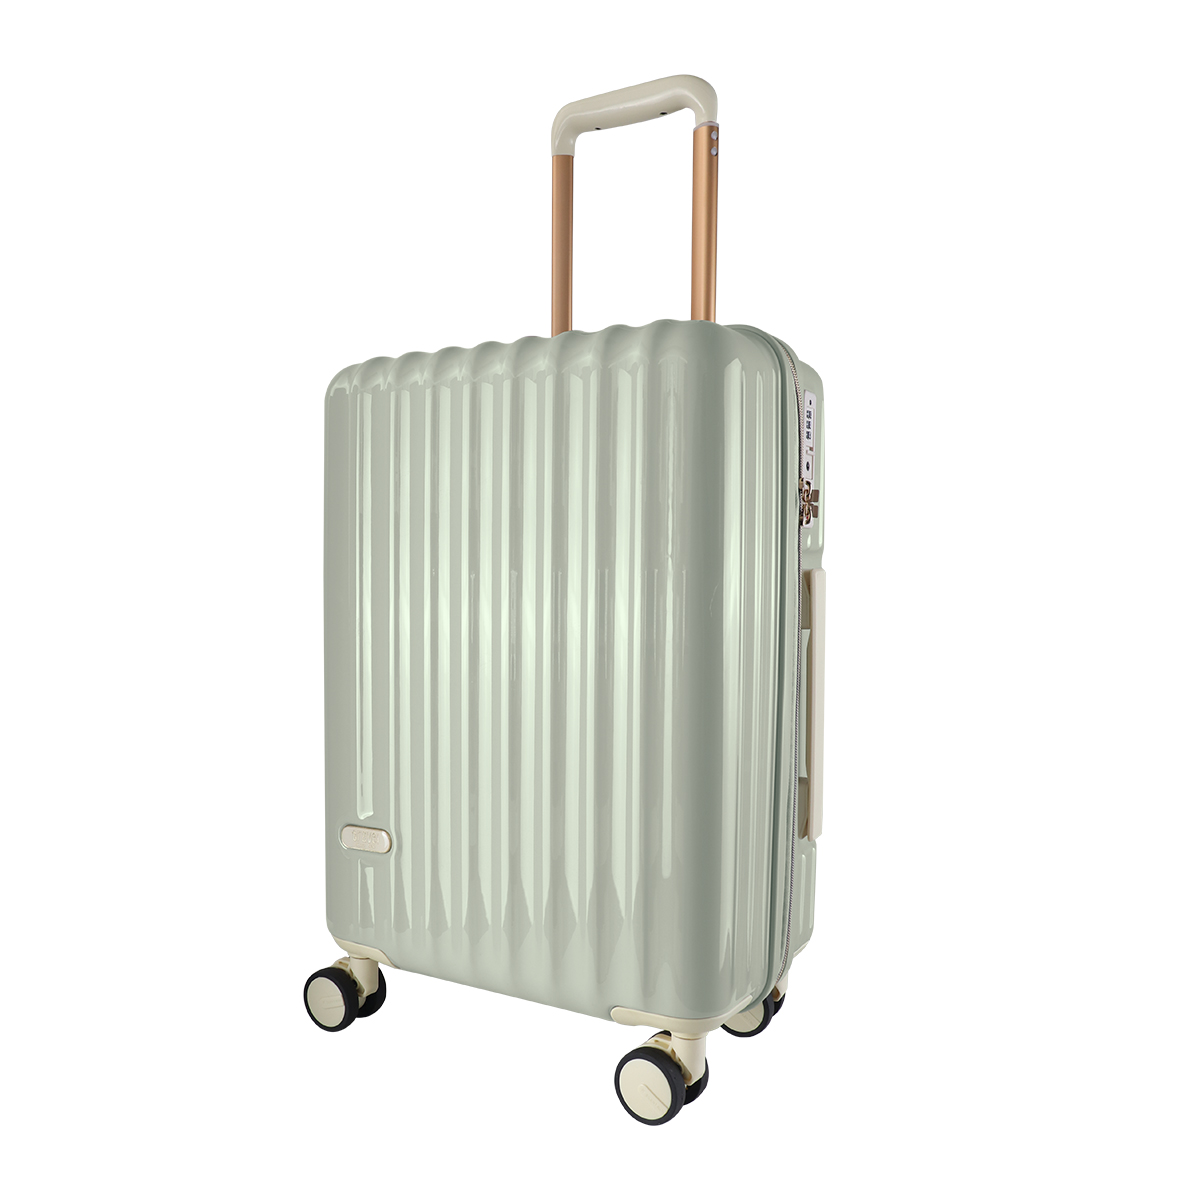 スーツケース キャリーケース Mサイズ 60L 大容量 軽量 ファスナータイプ 大型 ダイヤル式TSAロック搭載 旅行 キャリーバッグ おしゃれ  かわいい WEIMALL